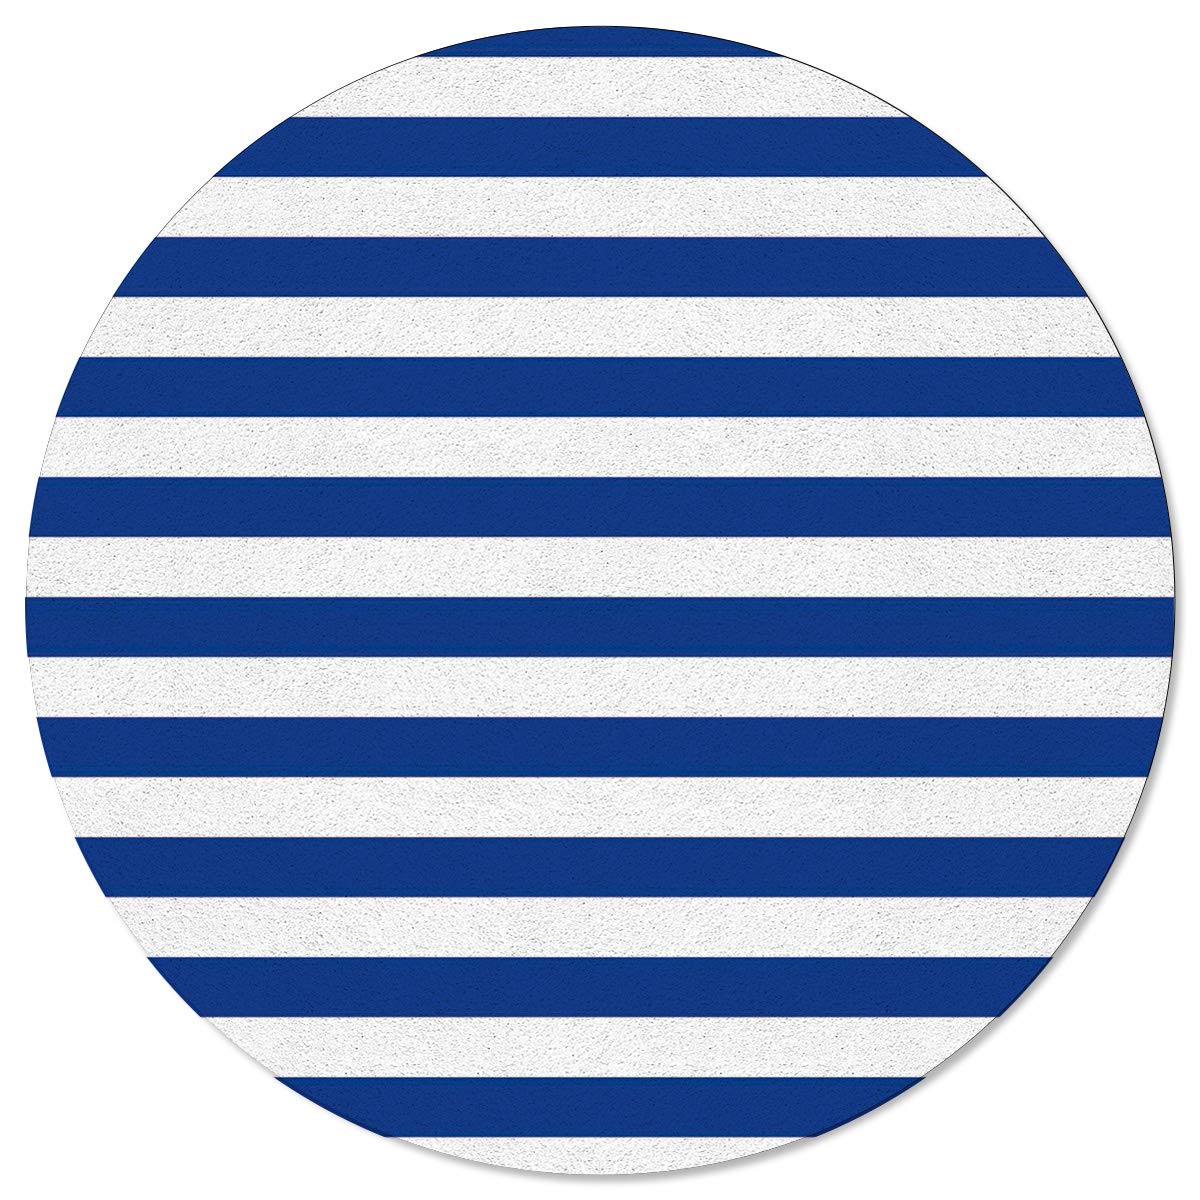 SunnyM Teppich, rund, Marineblau/Weiß gestreift, weich, rutschfeste Gummiunterseite, Yoga-Teppiche, für drinnen/Wohnzimmer/Schlafzimmer/Kinder, Stripe6s8052, 4'x4'